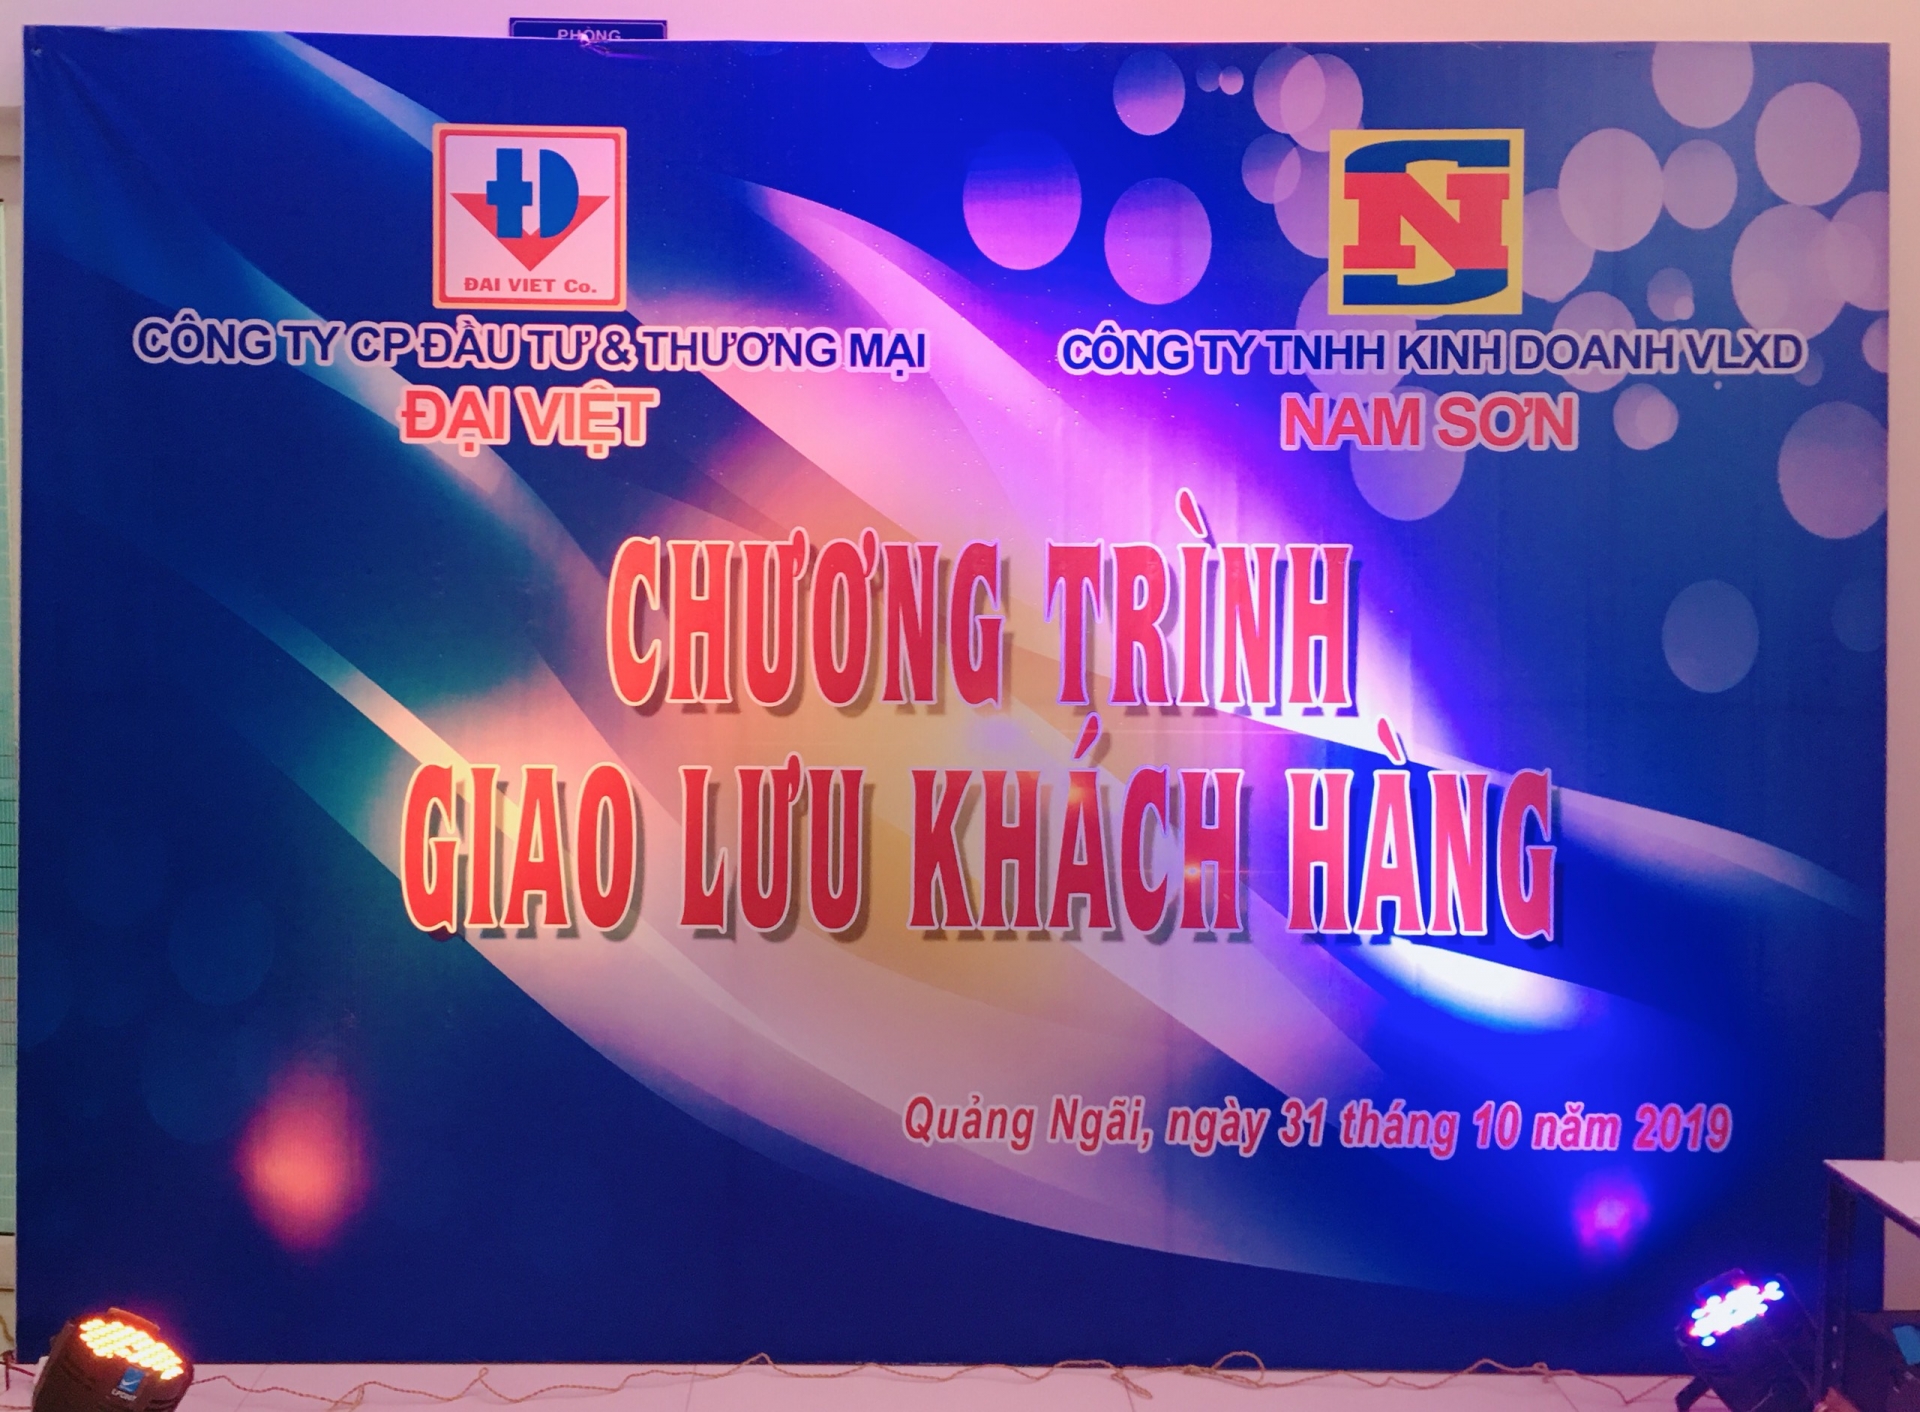 Công ty Cổ phần Đầu tư & Thương mại Đại Việt tổ chức đêm giao lưu hội nghị khách hàng.